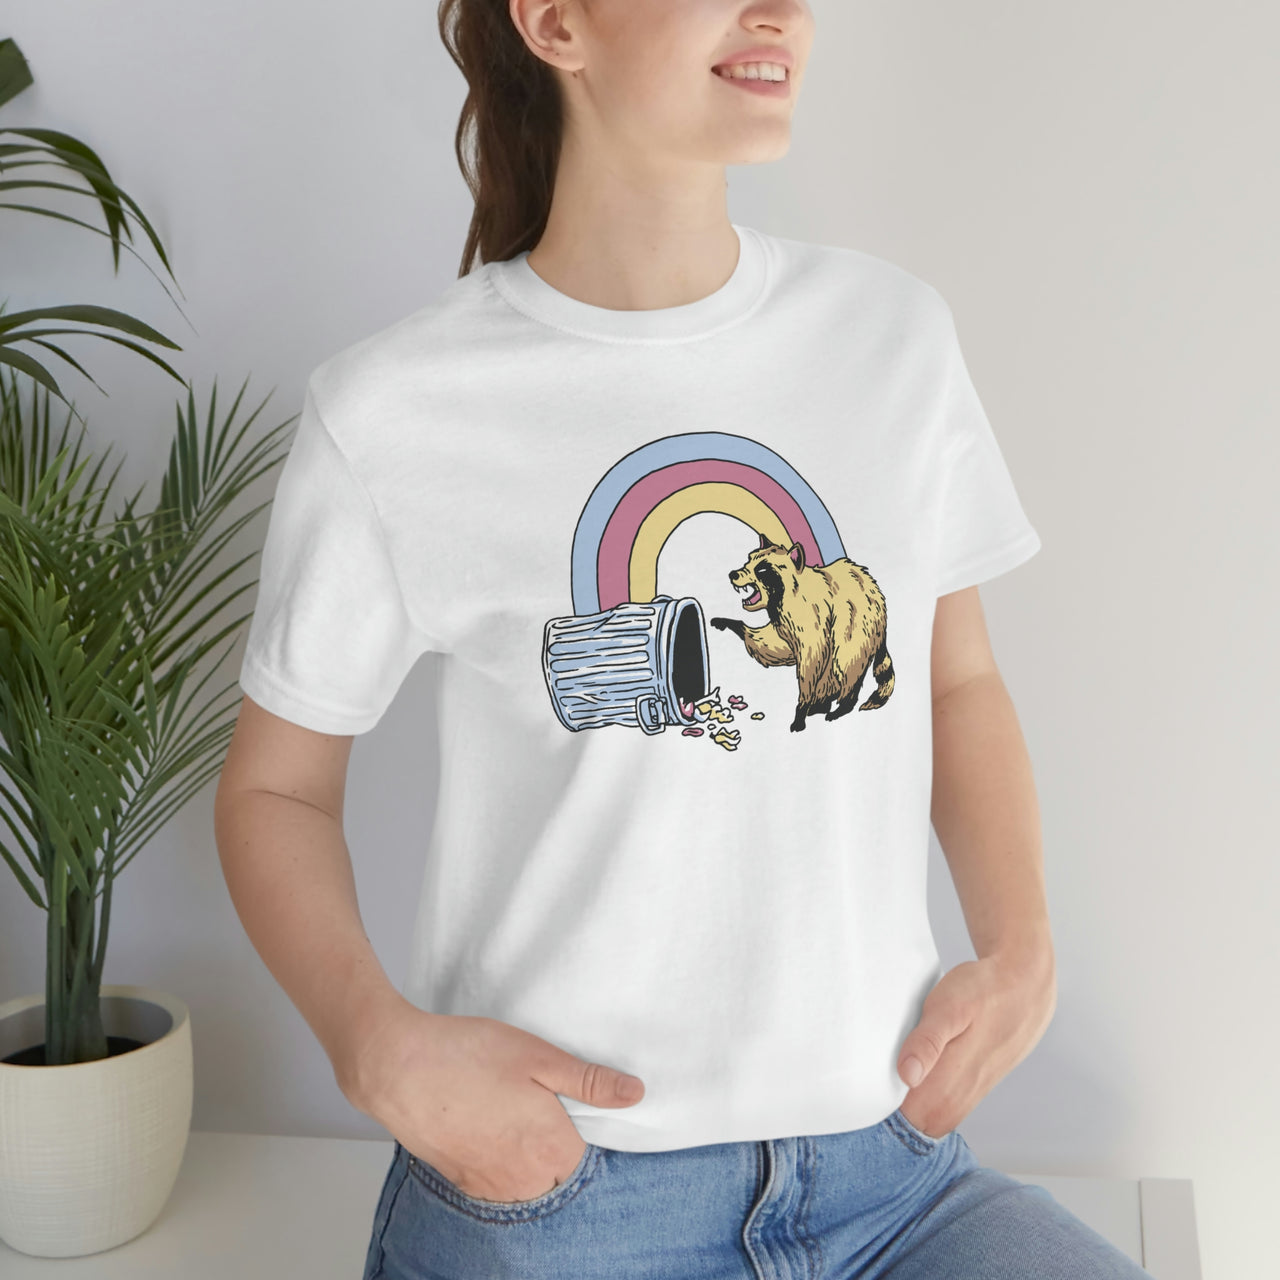 Rainbow Raccoon in the Trash T-Shirt